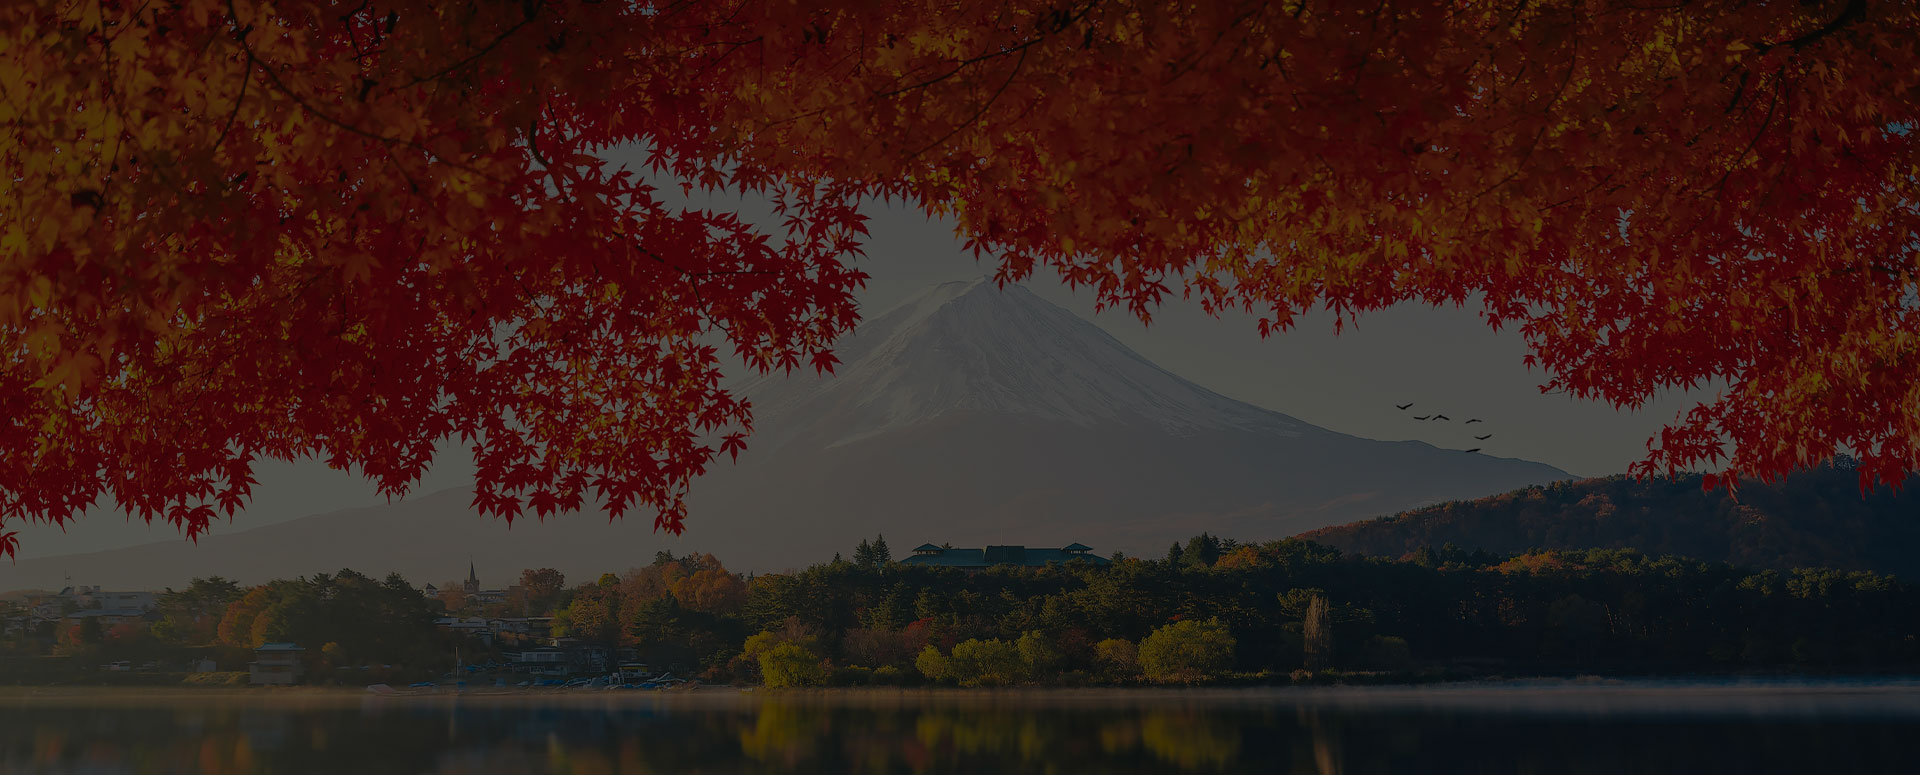 Mount Fuji, Japan in Fall